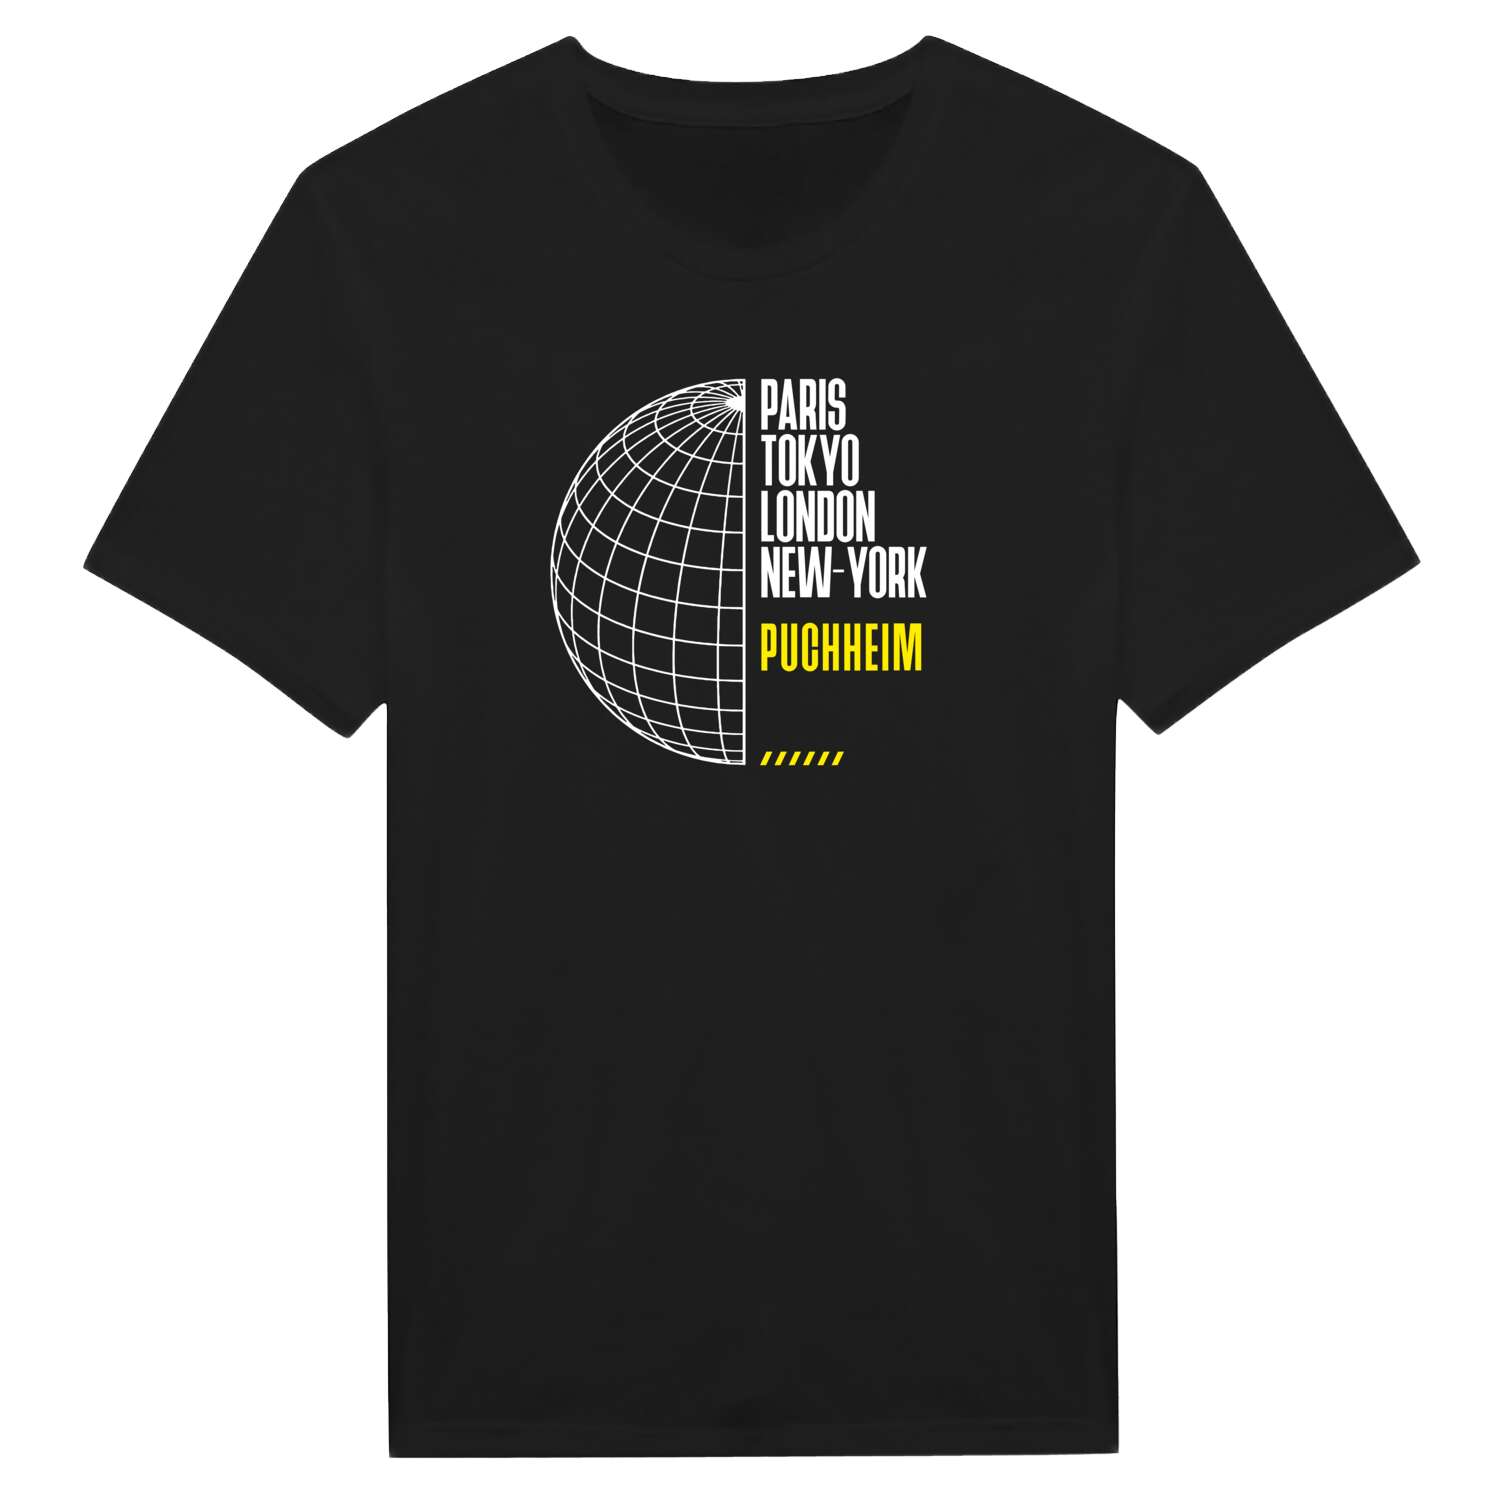 Puchheim T-Shirt »Paris Tokyo London«